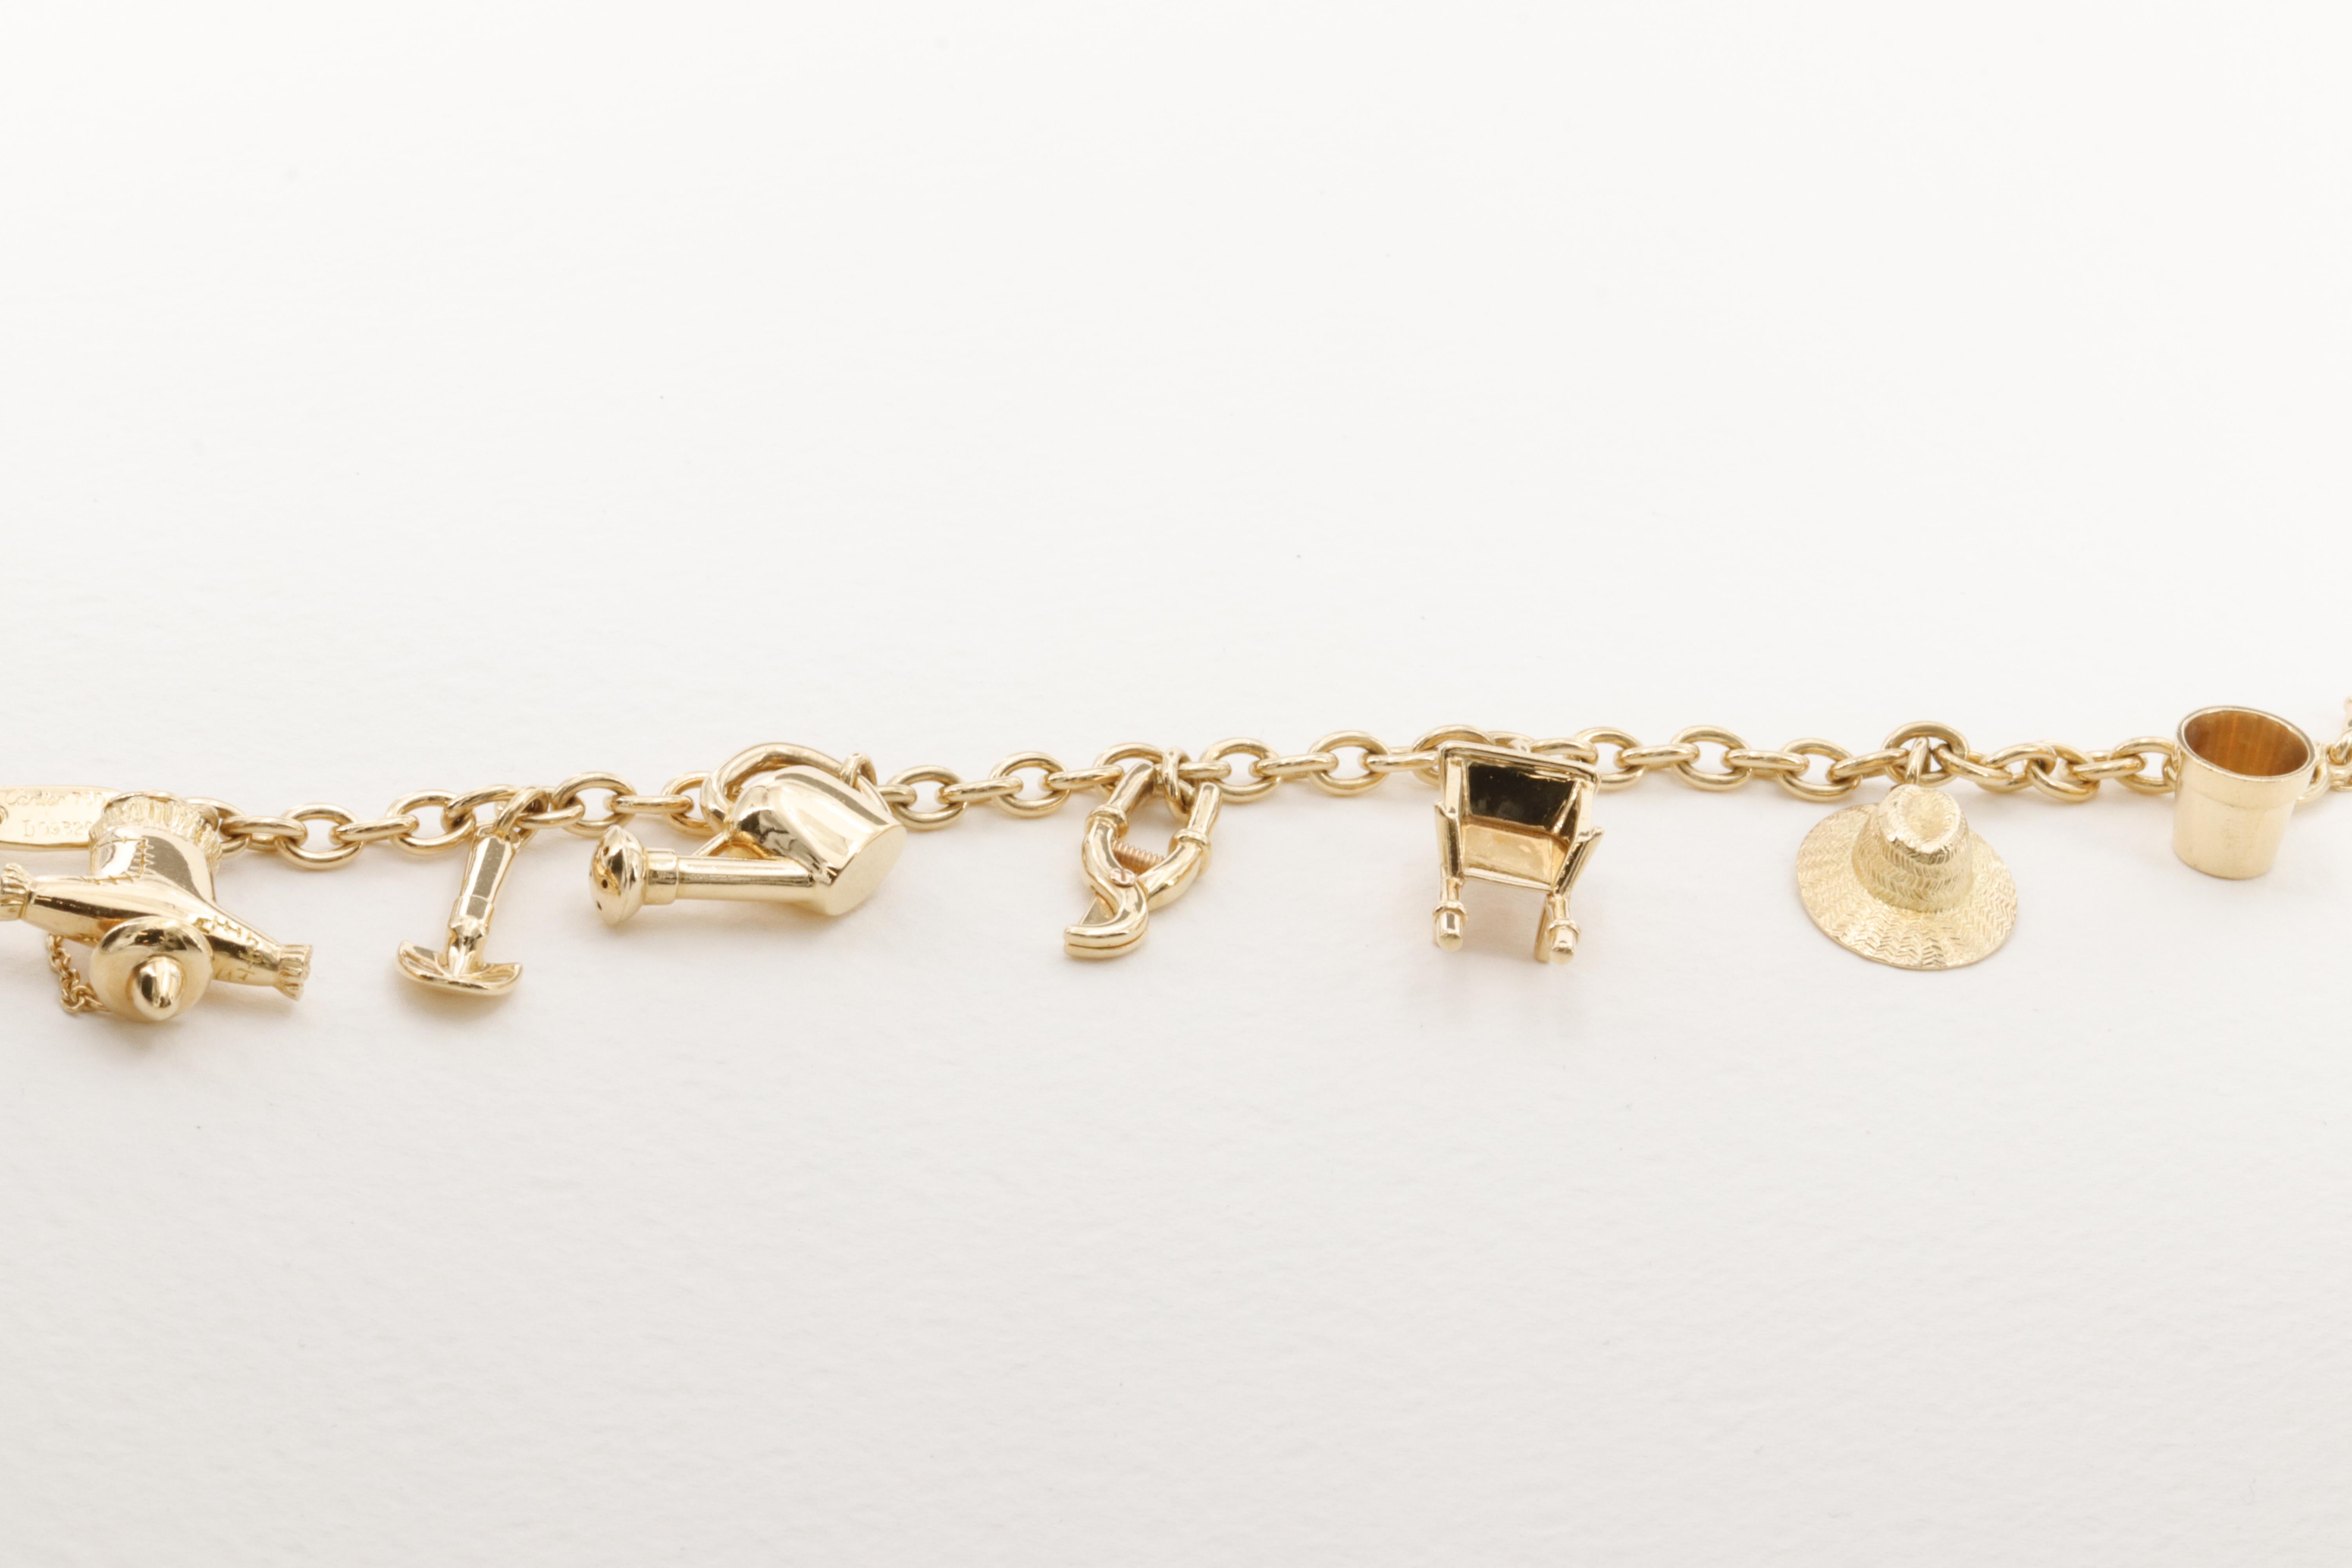 Eine unglaubliche Cartier 18 Karat Gelbgold themed Charme Armband mit 7 Gartenarbeit inspiriert Charme, von einer skurrilen Vogelscheuche zu einer Miniatur-Schaufel, die 3 dimensionalen Charme sind sehr repräsentativ für ihre realen Gegenstücke.